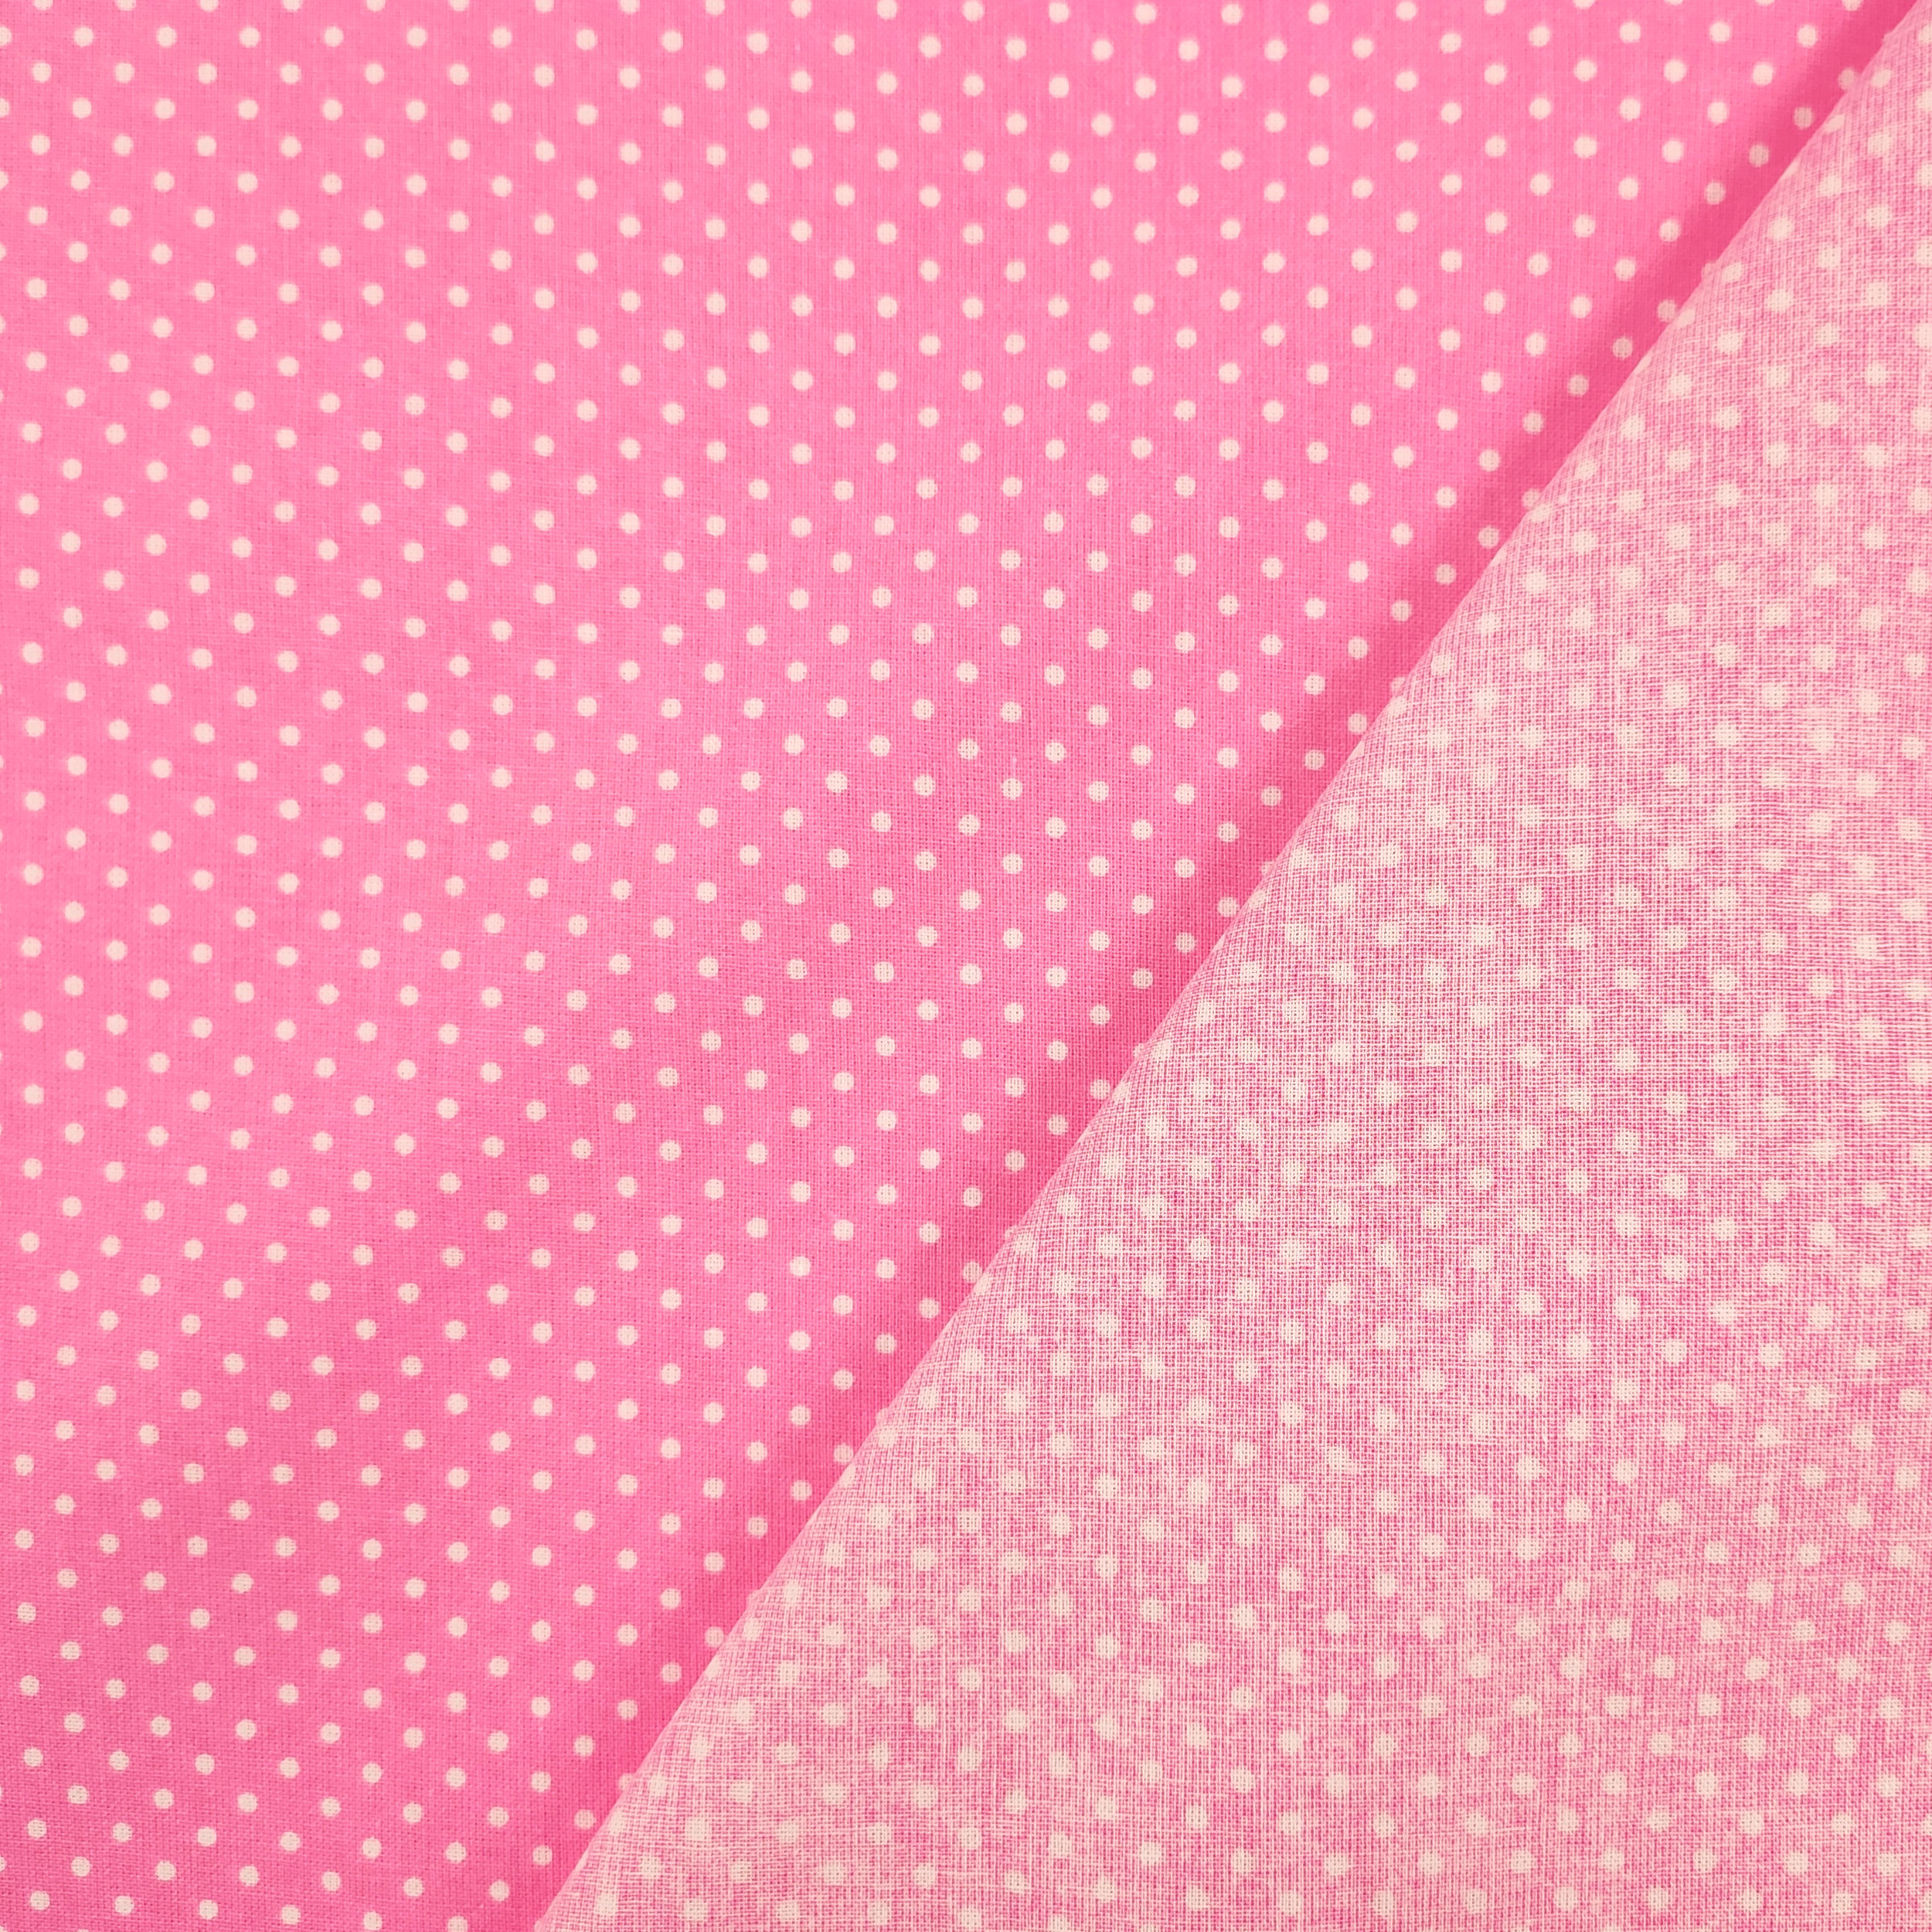 cotone abbigliamento pois sfondo rosa